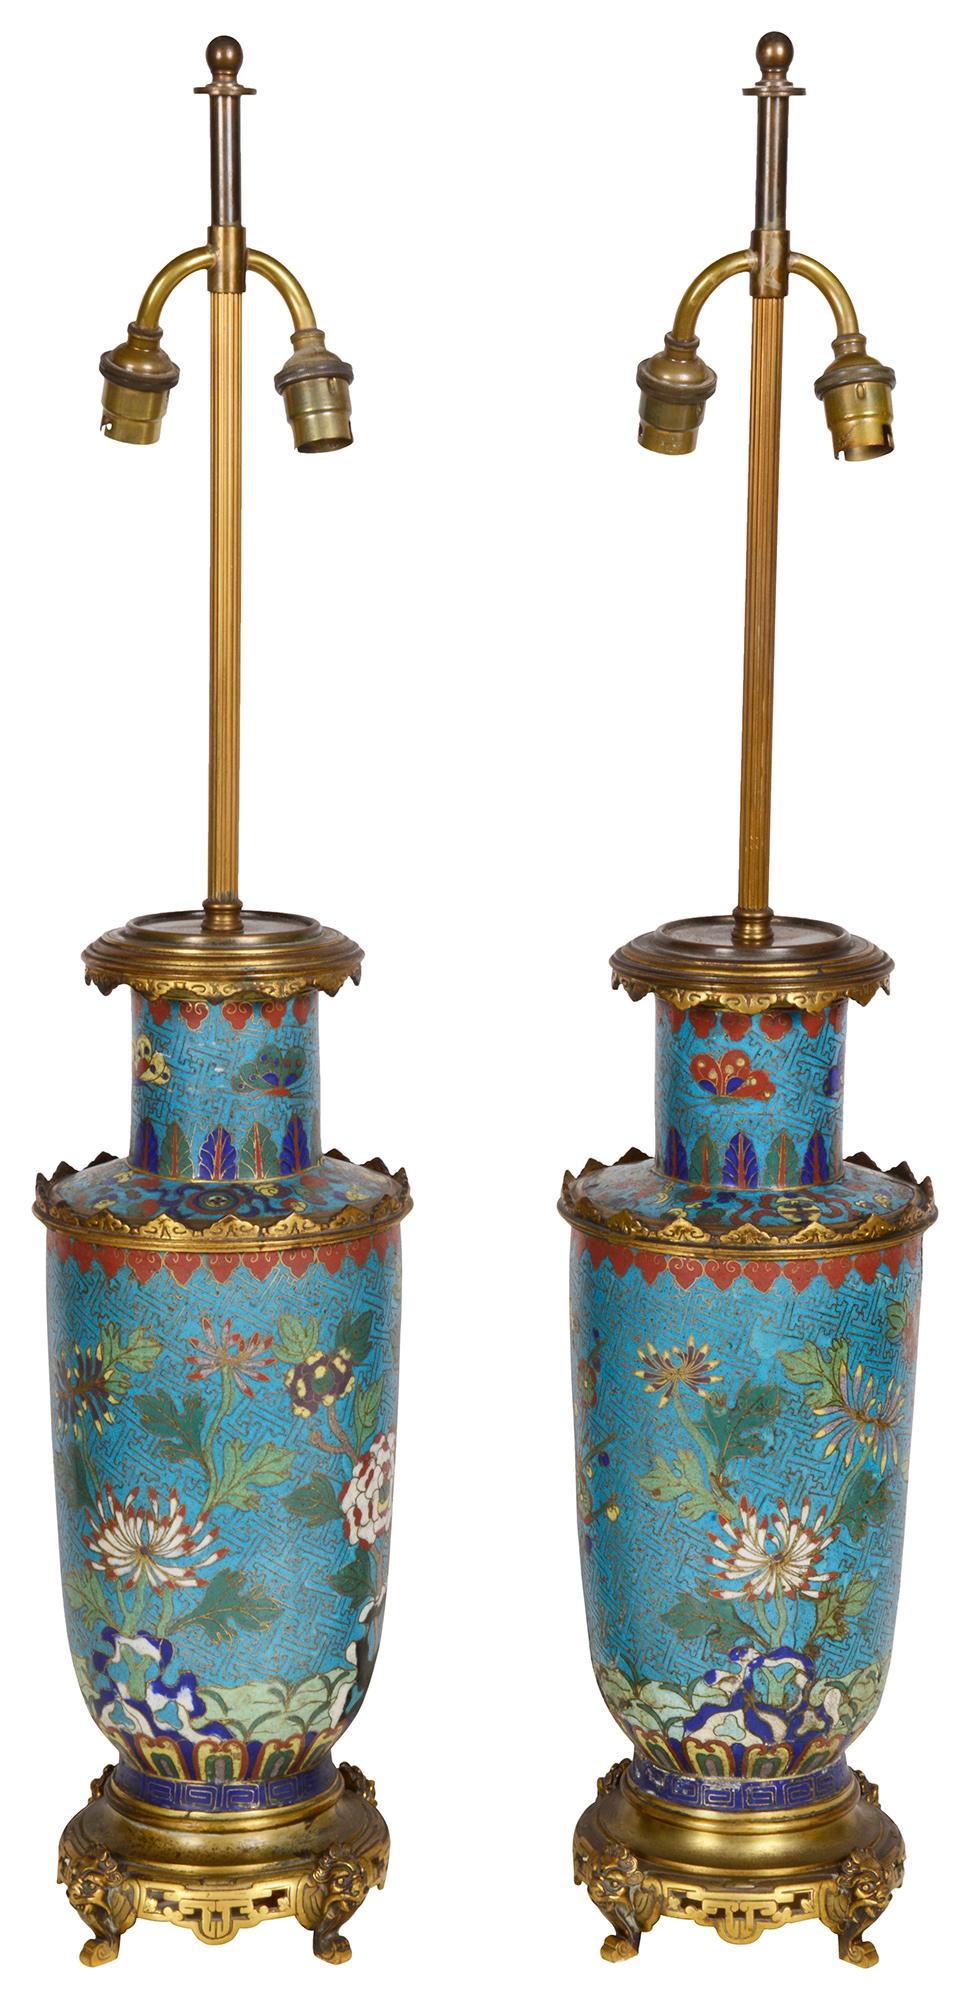 Une paire très décorative de vases / lampes en émail champlevé de style oriental français de la fin du 19e siècle. Chacune d'entre elles présente un magnifique fond turquoise et des fleurs exotiques, avec des montures en bronze doré.